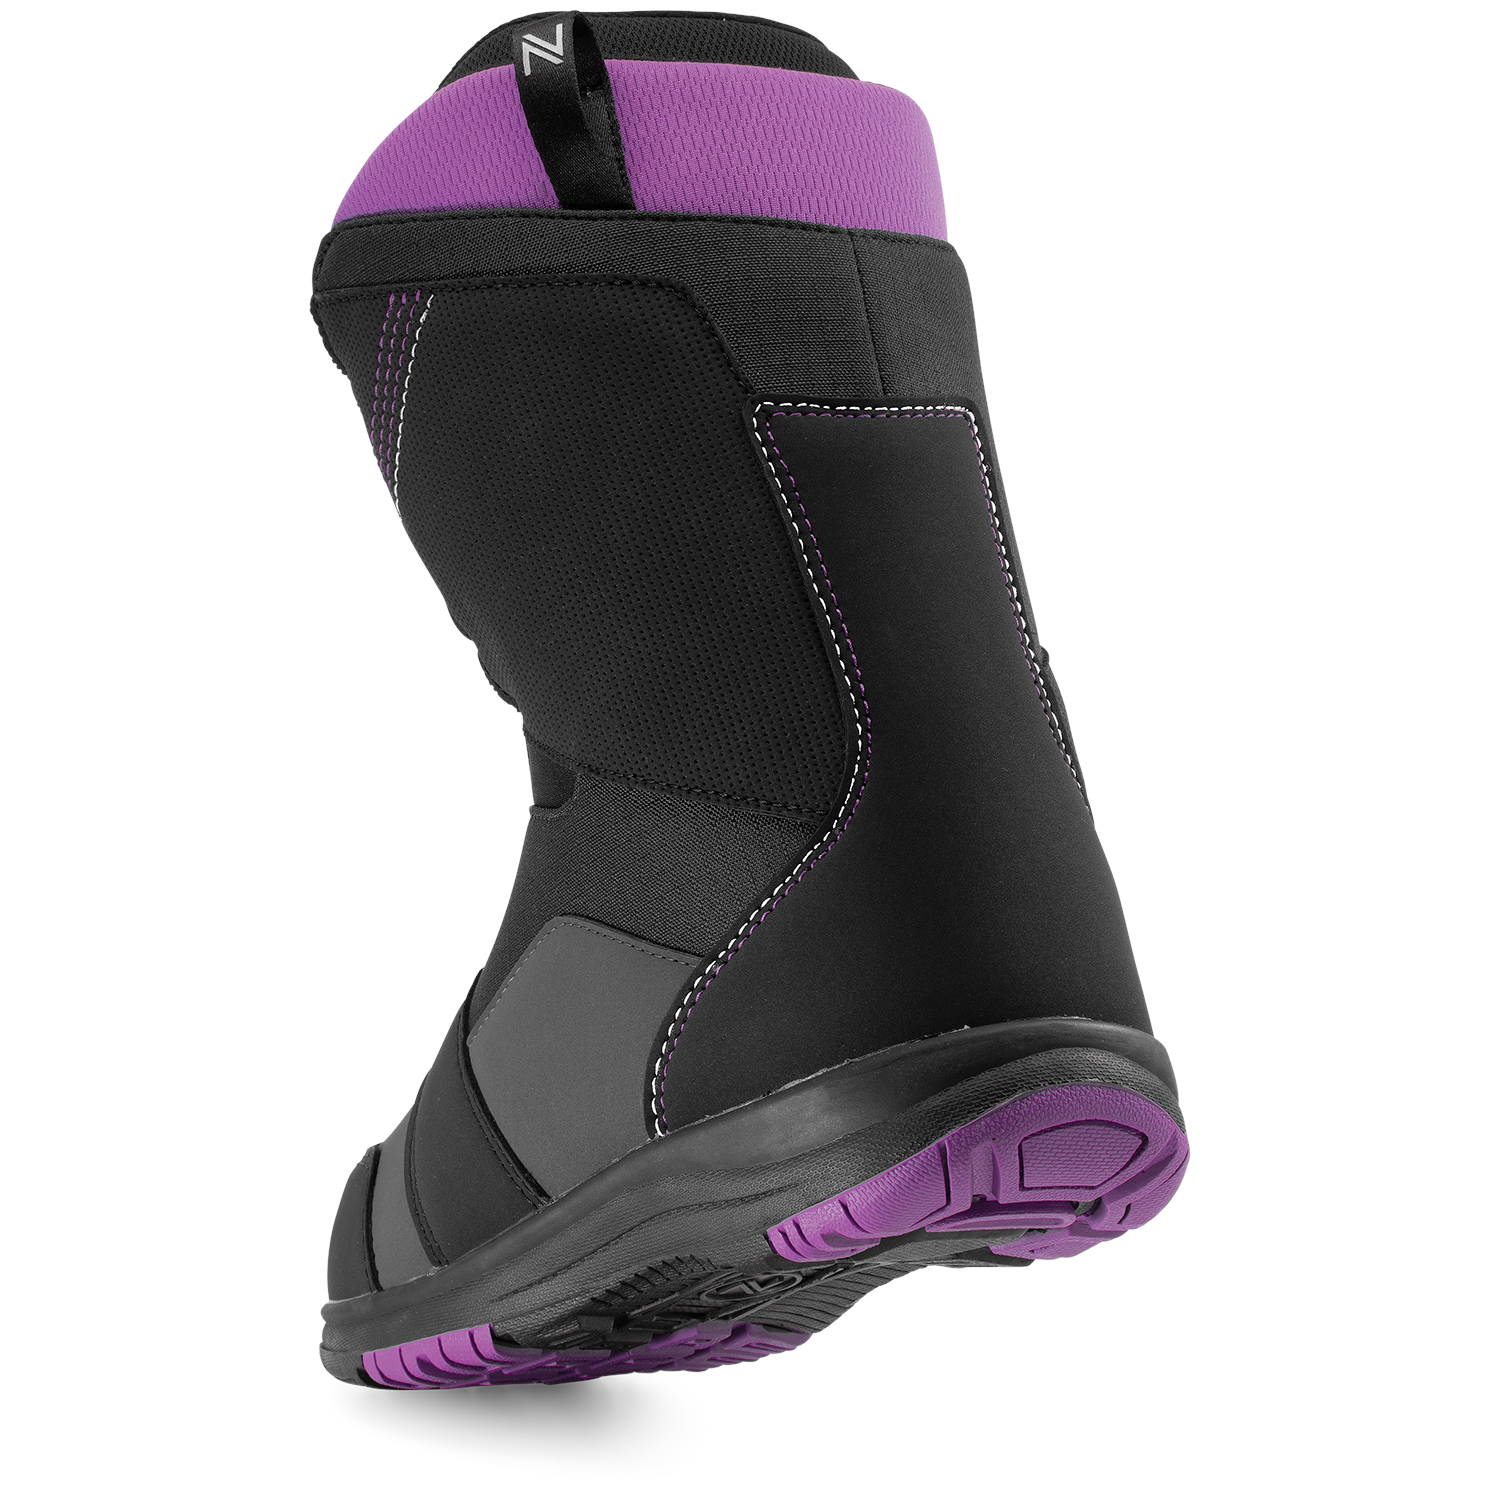 Nidecker Maya Boa Snowboard Boots - Women's 2021 | evo